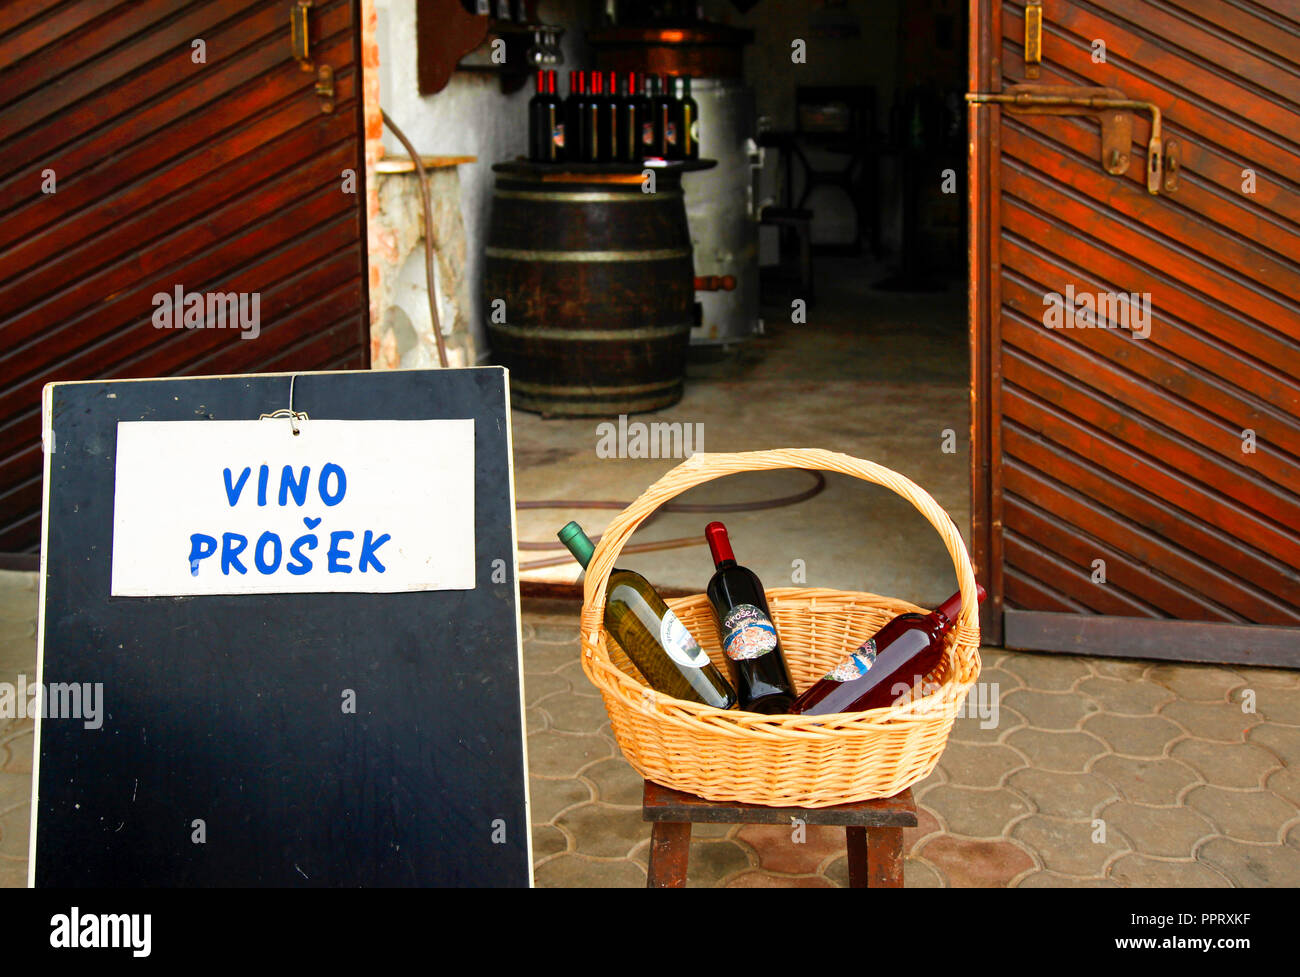 Vino stocker dans la cave Prosek Vrbnik, un petit village sur l'île croate de Krk, dans la mer Adriatique Banque D'Images